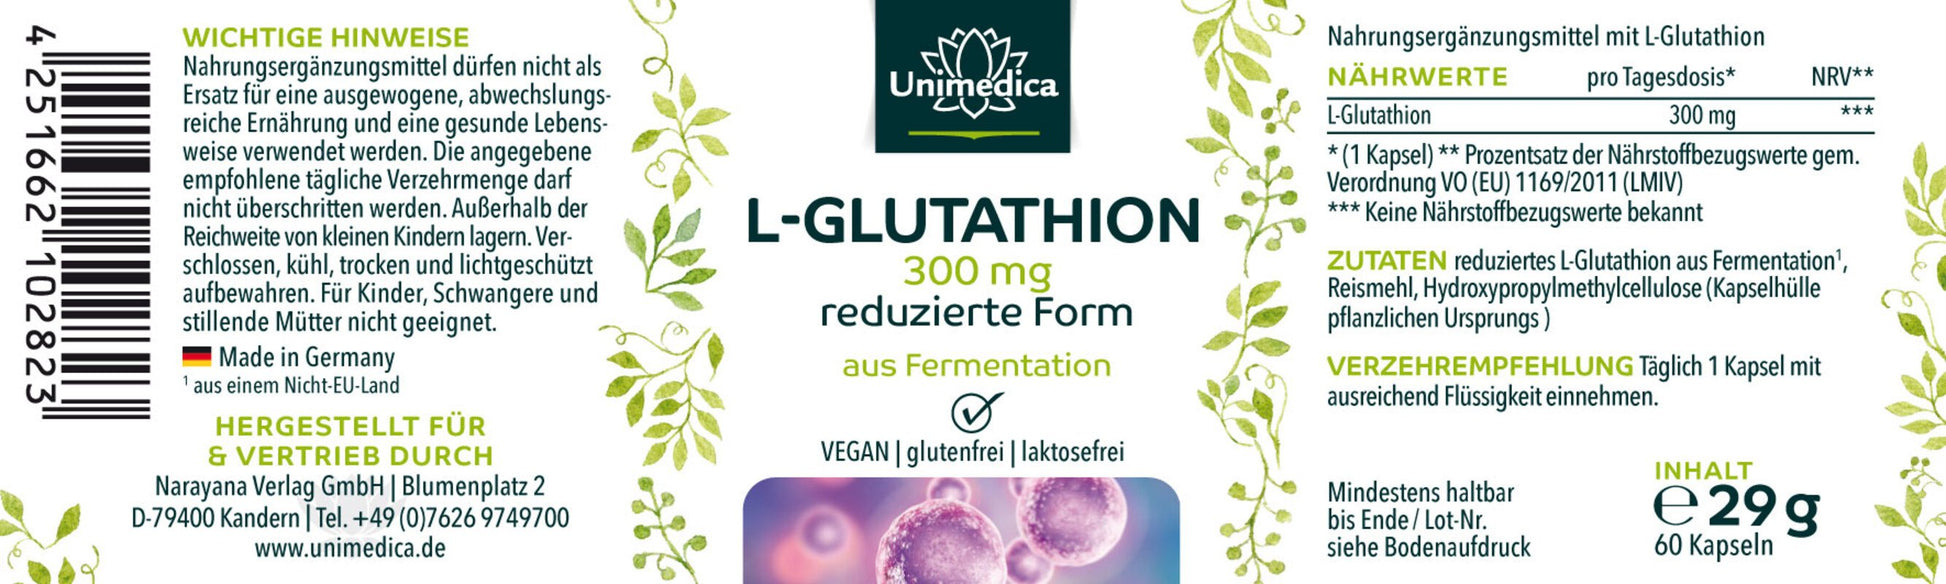 Glutathion - reduziertes L-Glutathion aus natürlicher Fermentation - 300 mg pro Tagesdosis - Etikett